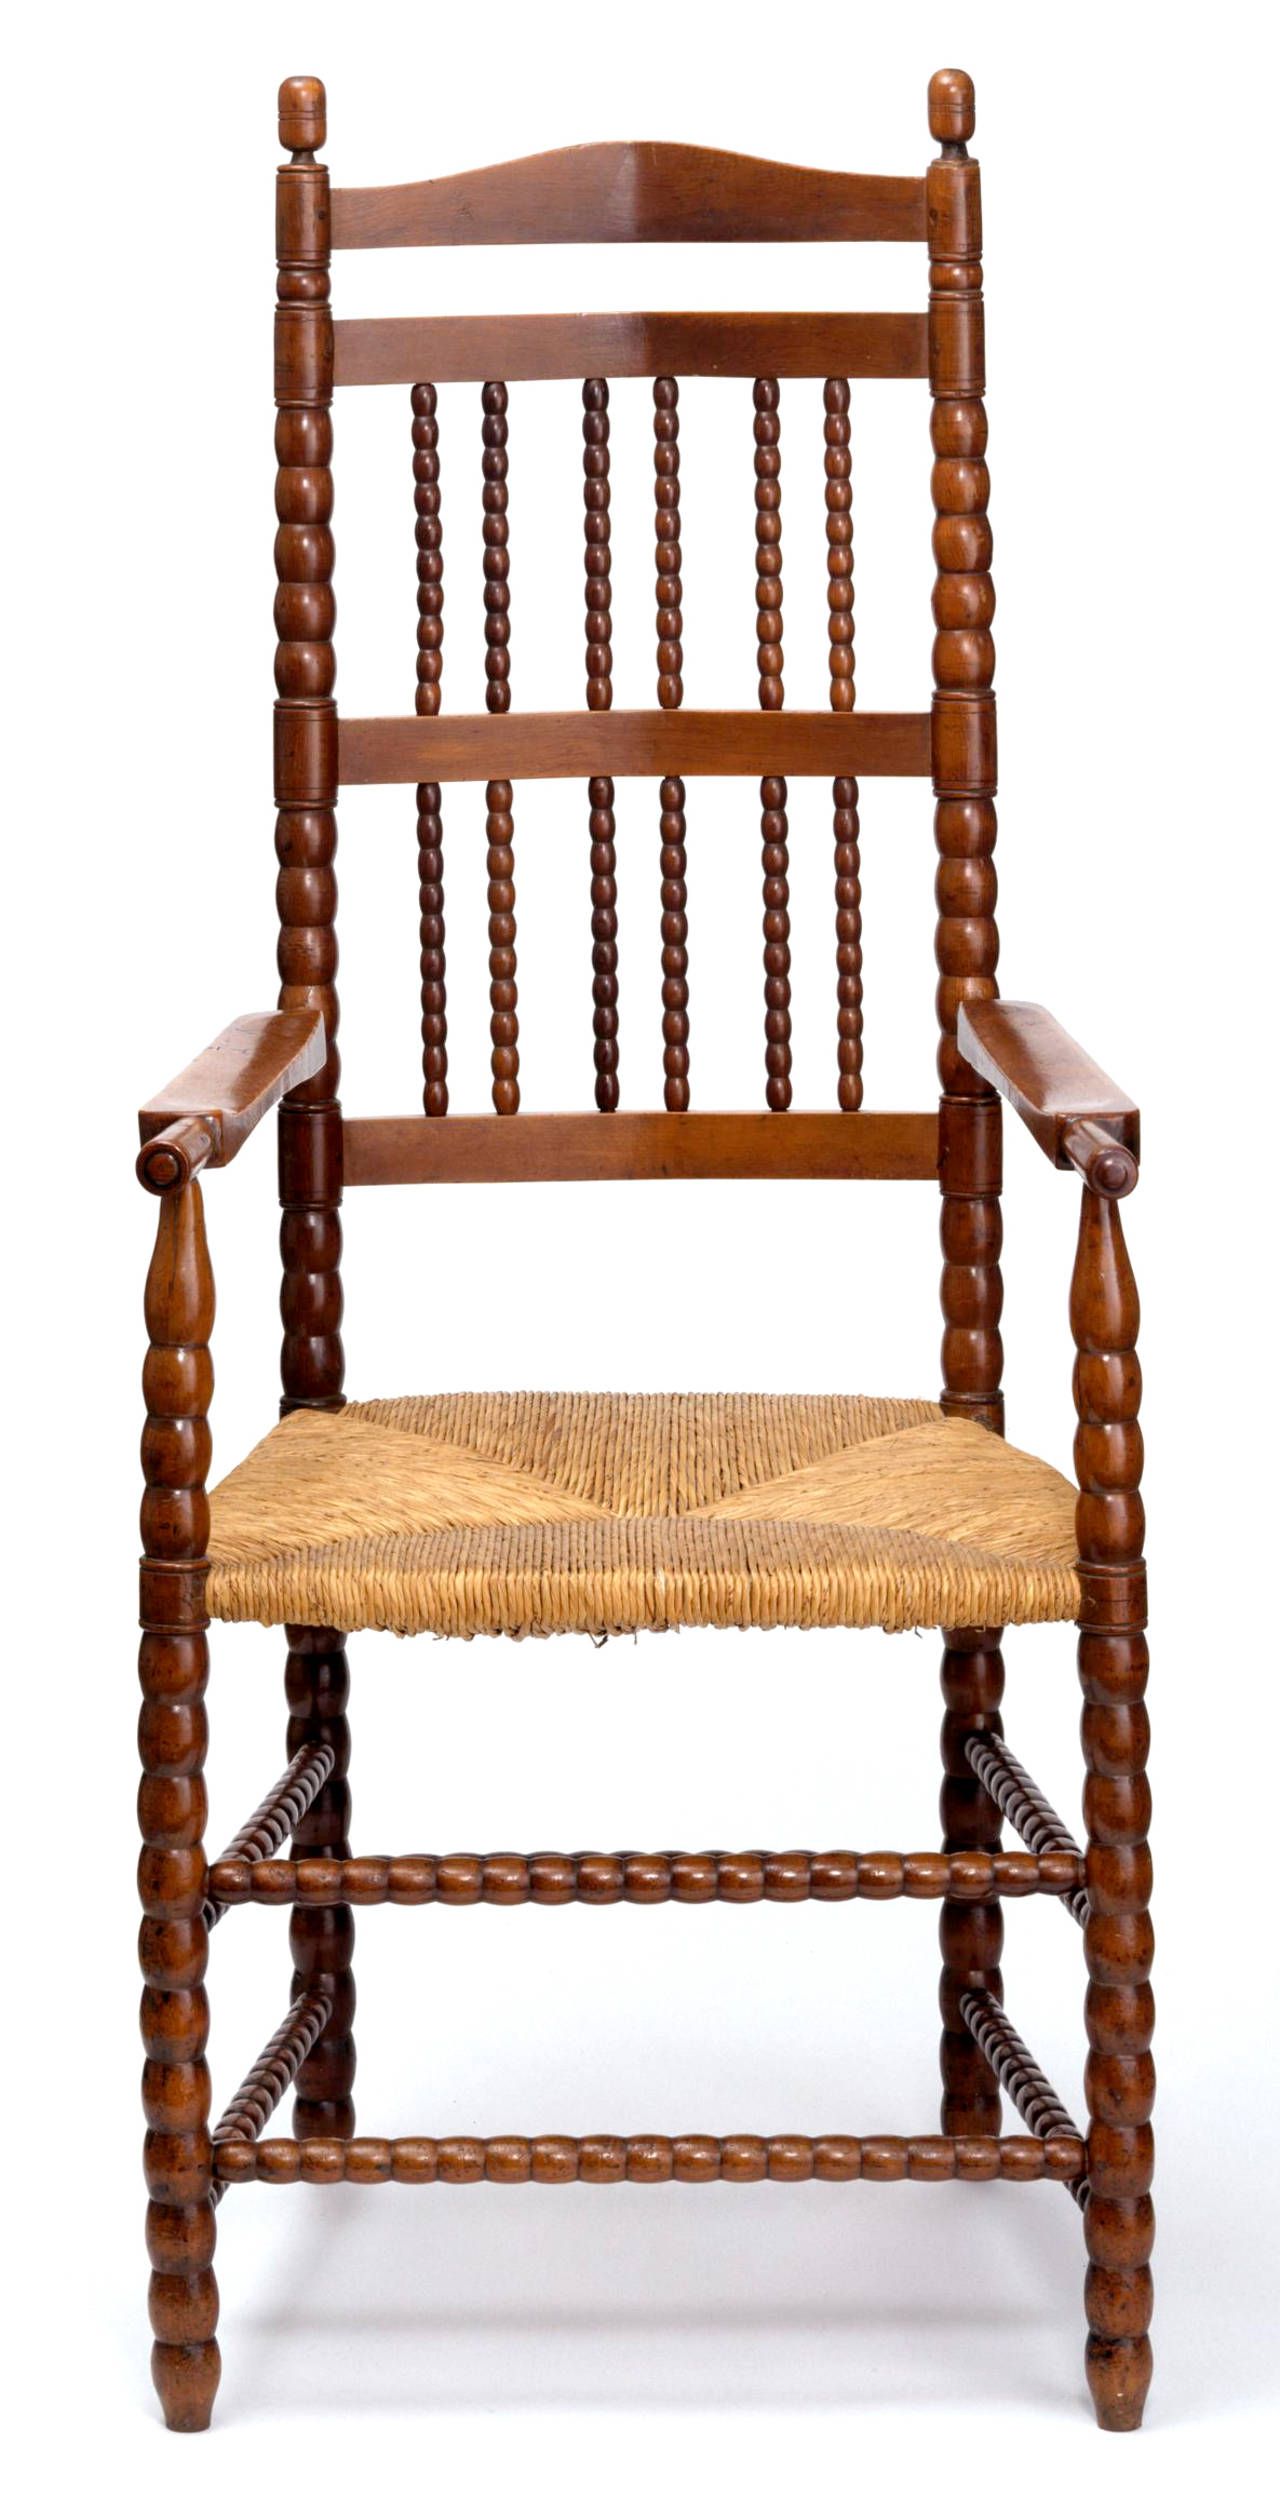 Ernest William Gimson tarafından tasarlanan sandalye, Edward Gardiner tarafından üretilmiştir, 1905, Sapperton, İngiltere